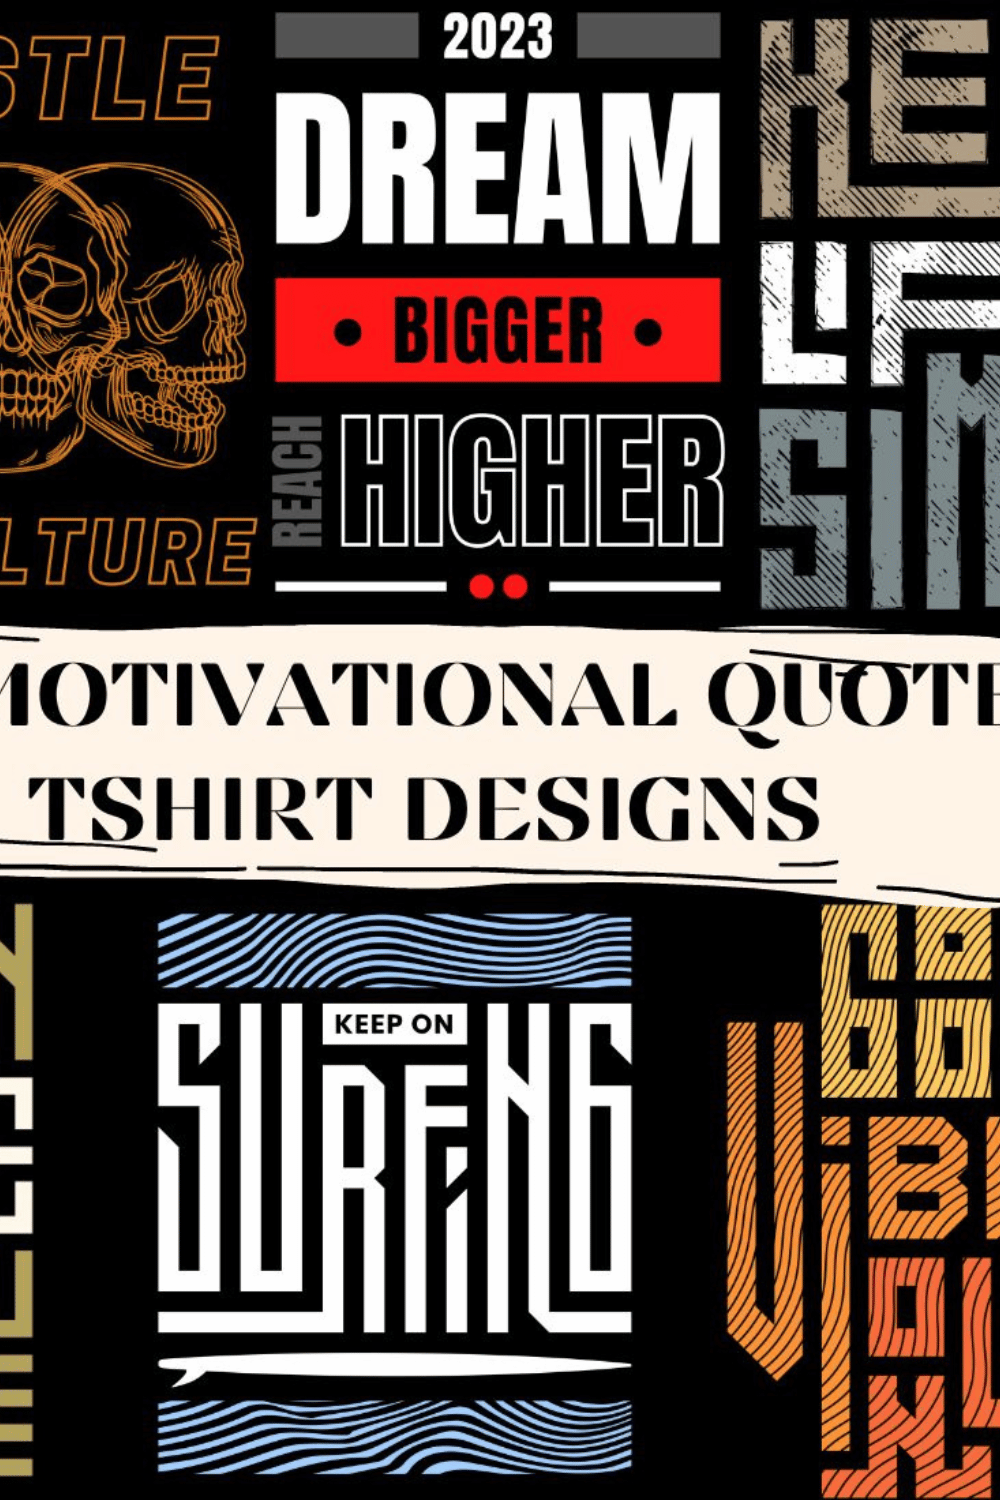 50 Motivational Quote T-shirt Designs pinterest image.